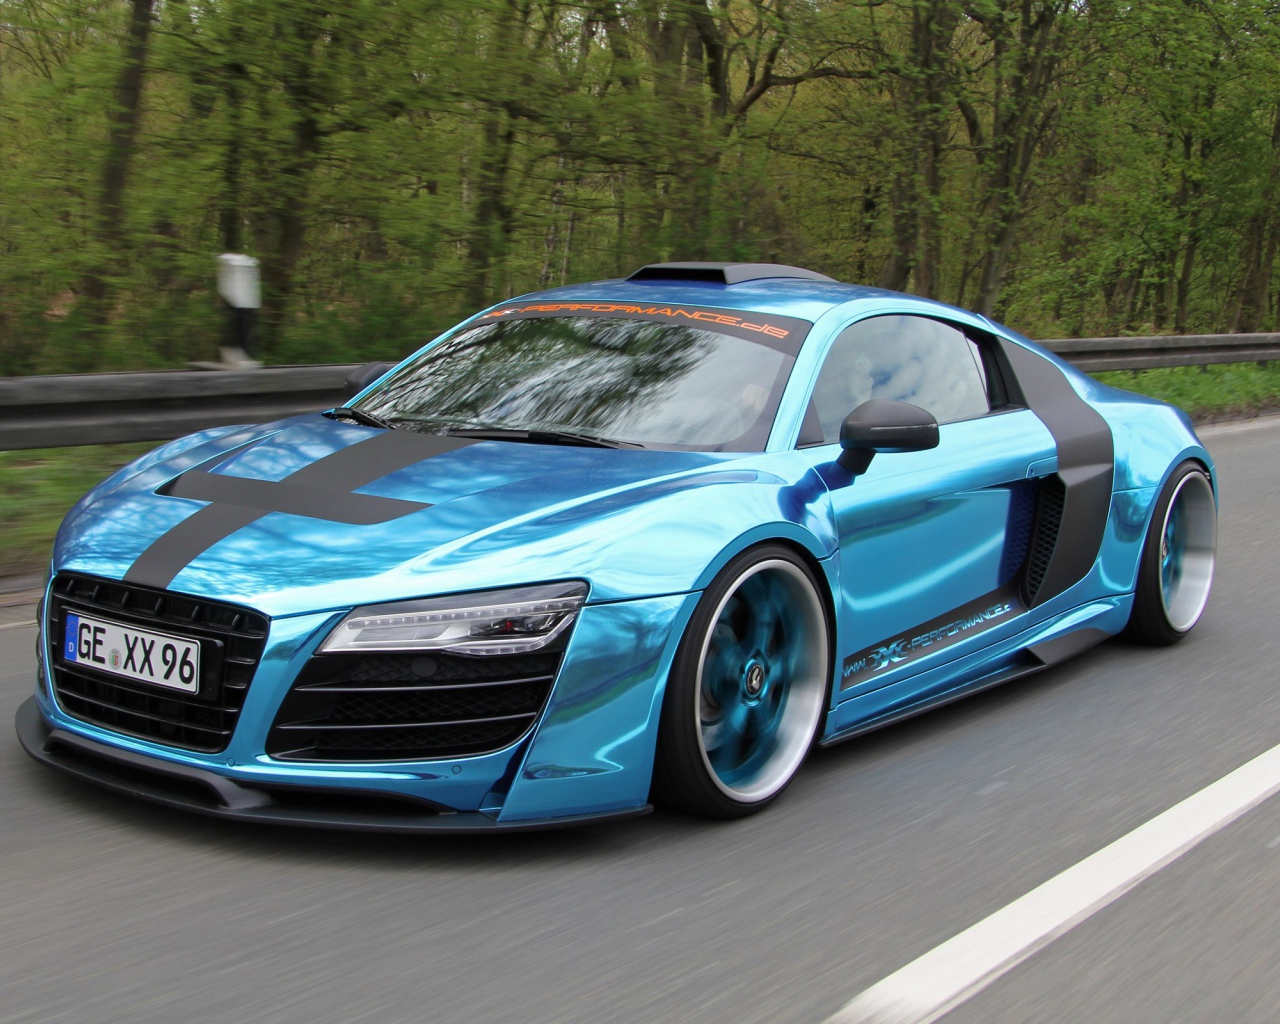 Голубая Audi R8